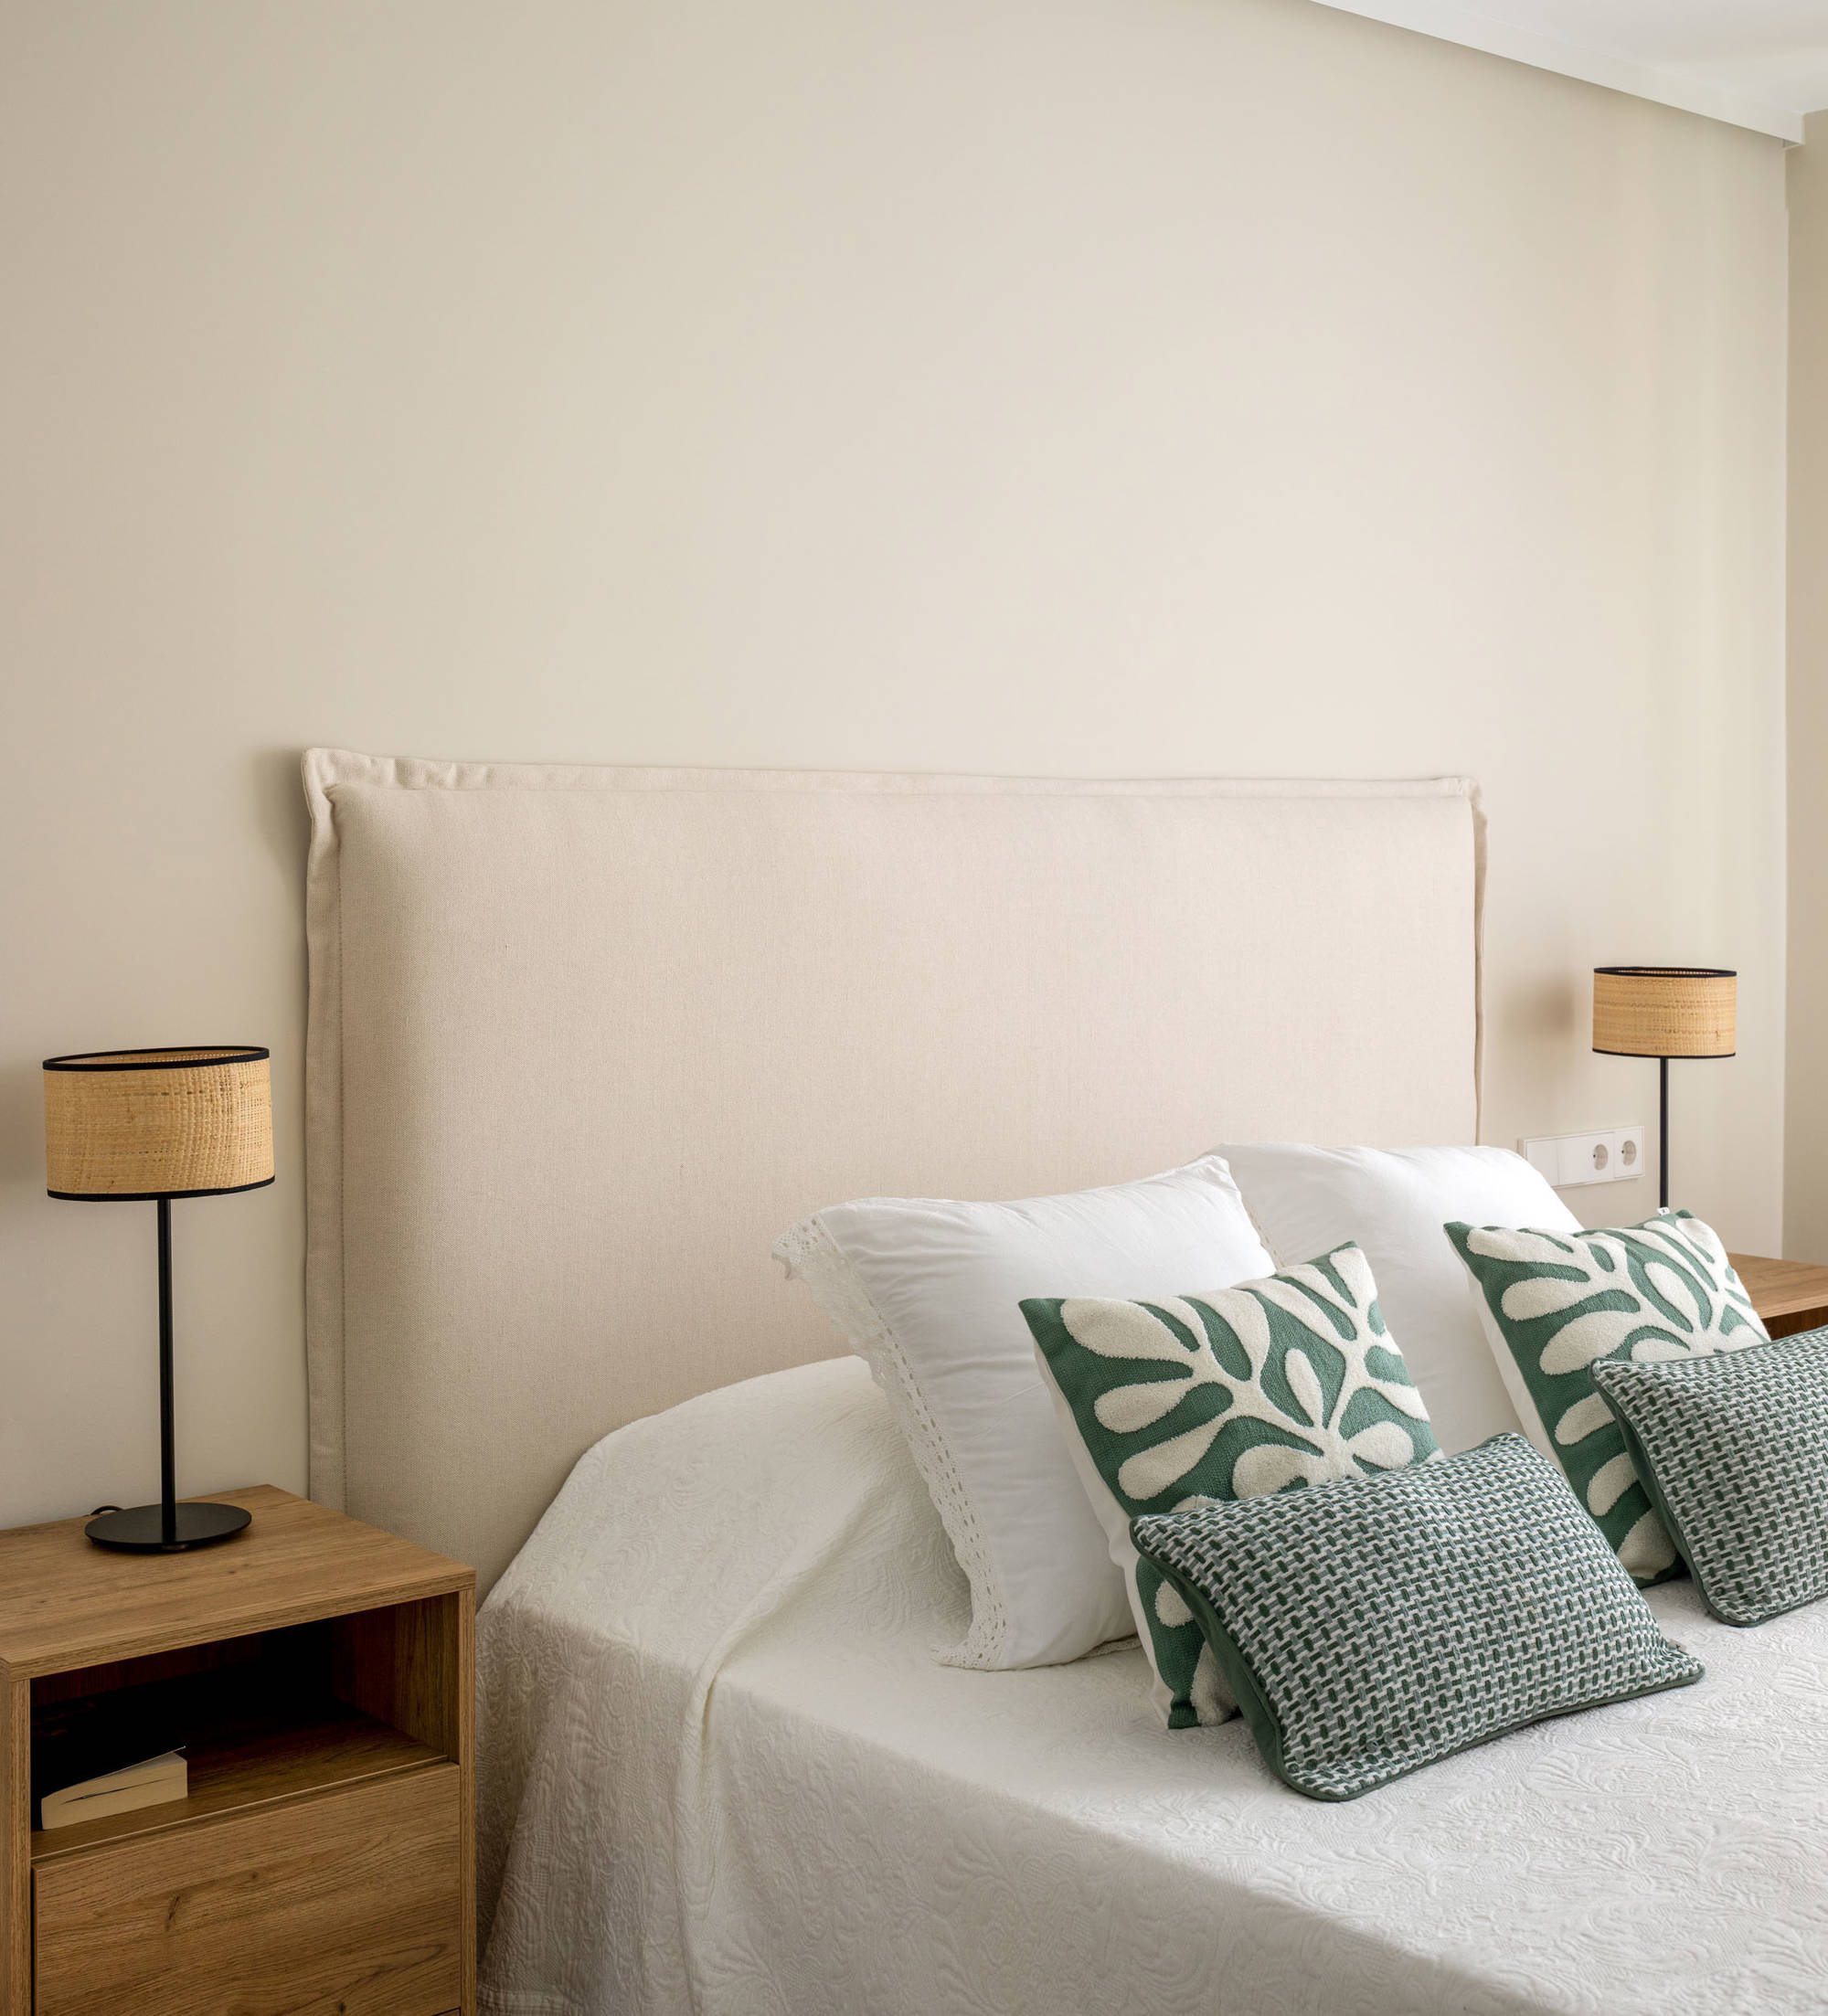 Dormitorio con mesitas de madera, cabecero tapizado y cojines verdes.